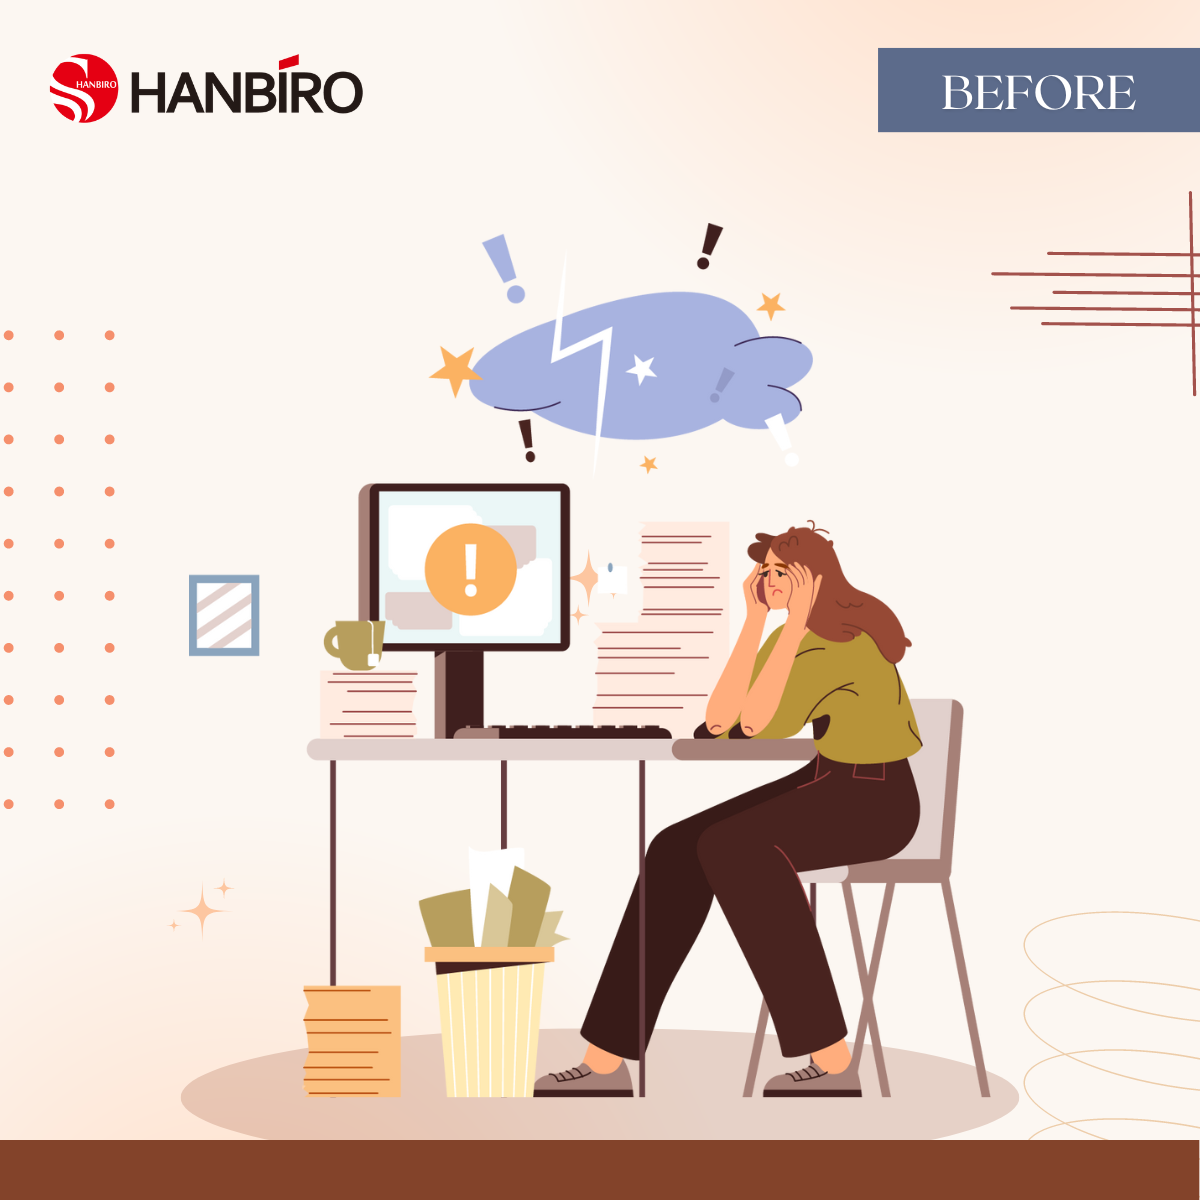 Quy trình chấm công thời đại 4.0 với Hanbiro Groupware